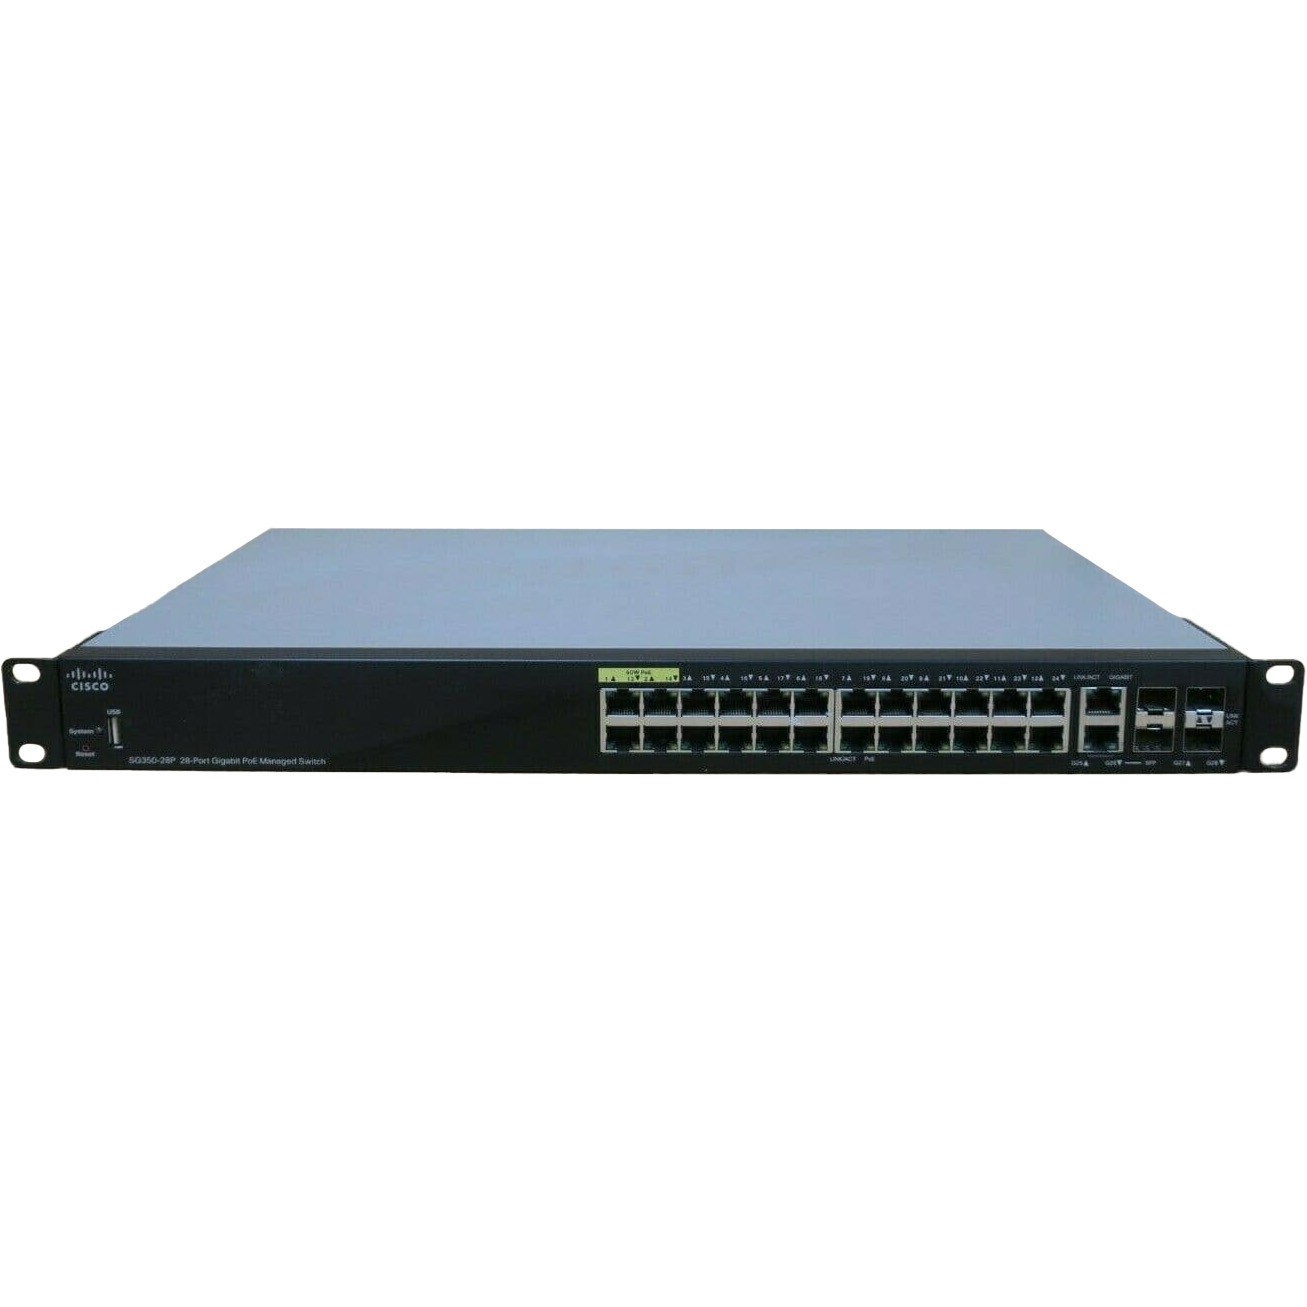 Cisco SG350-28P 24xRJ-45 1G PoE+ Managed Switch